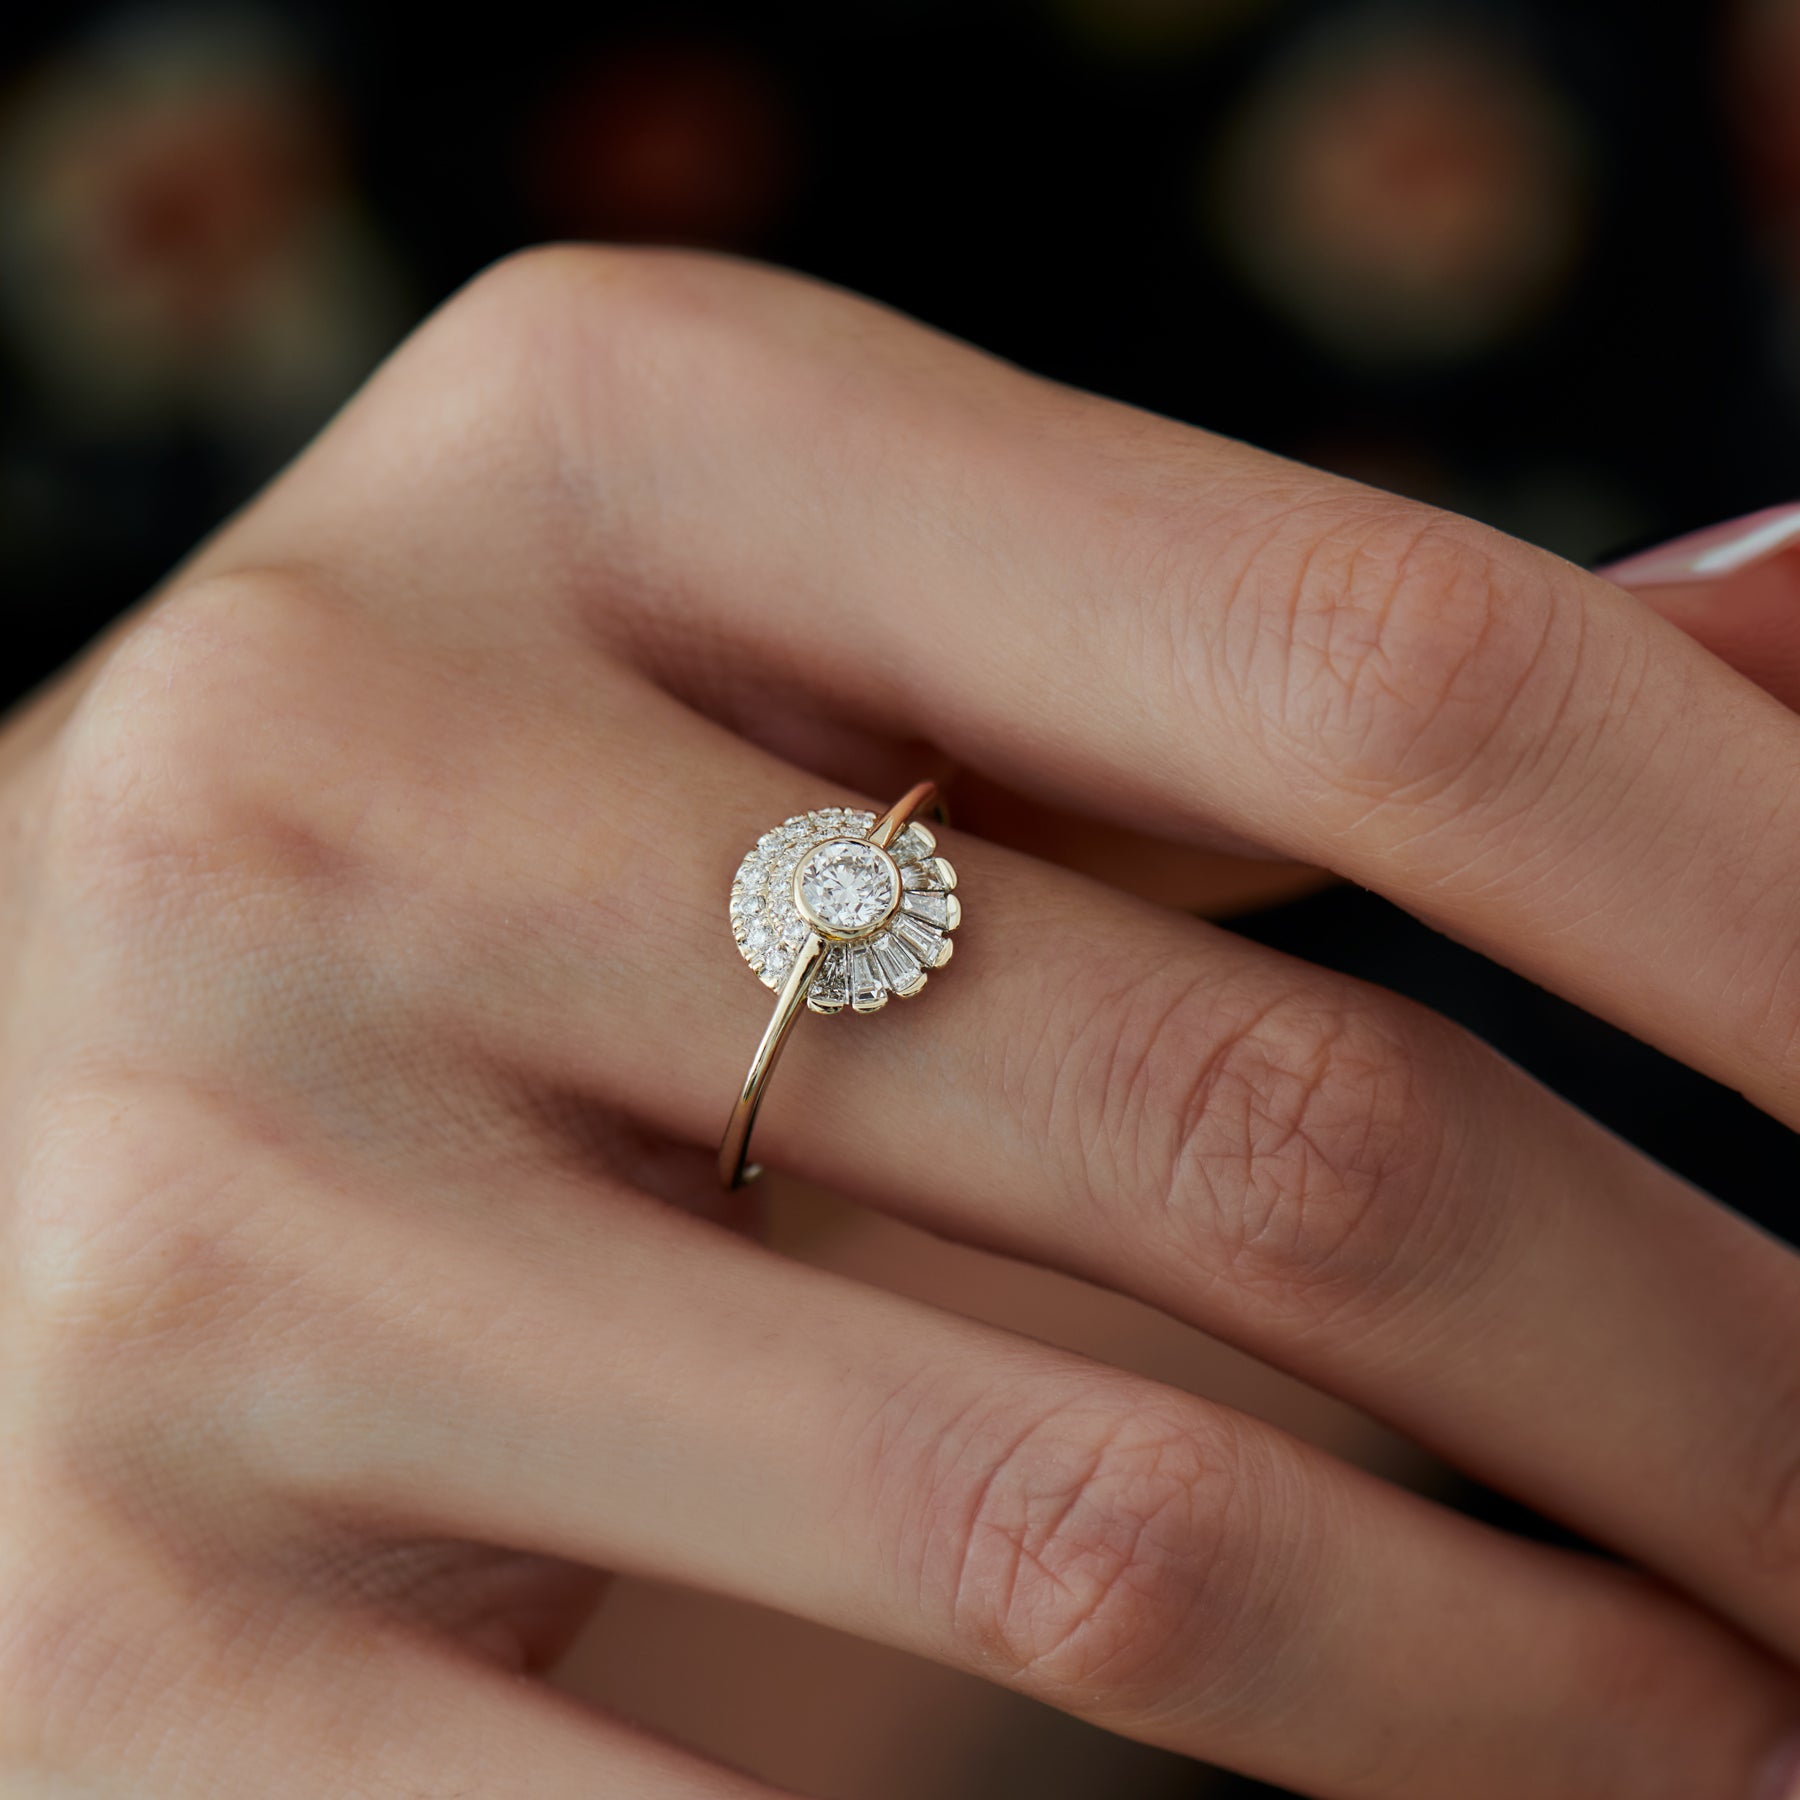 Diamond Rings For Women - Buy Diamond Rings For Women Online in India |  Myntra